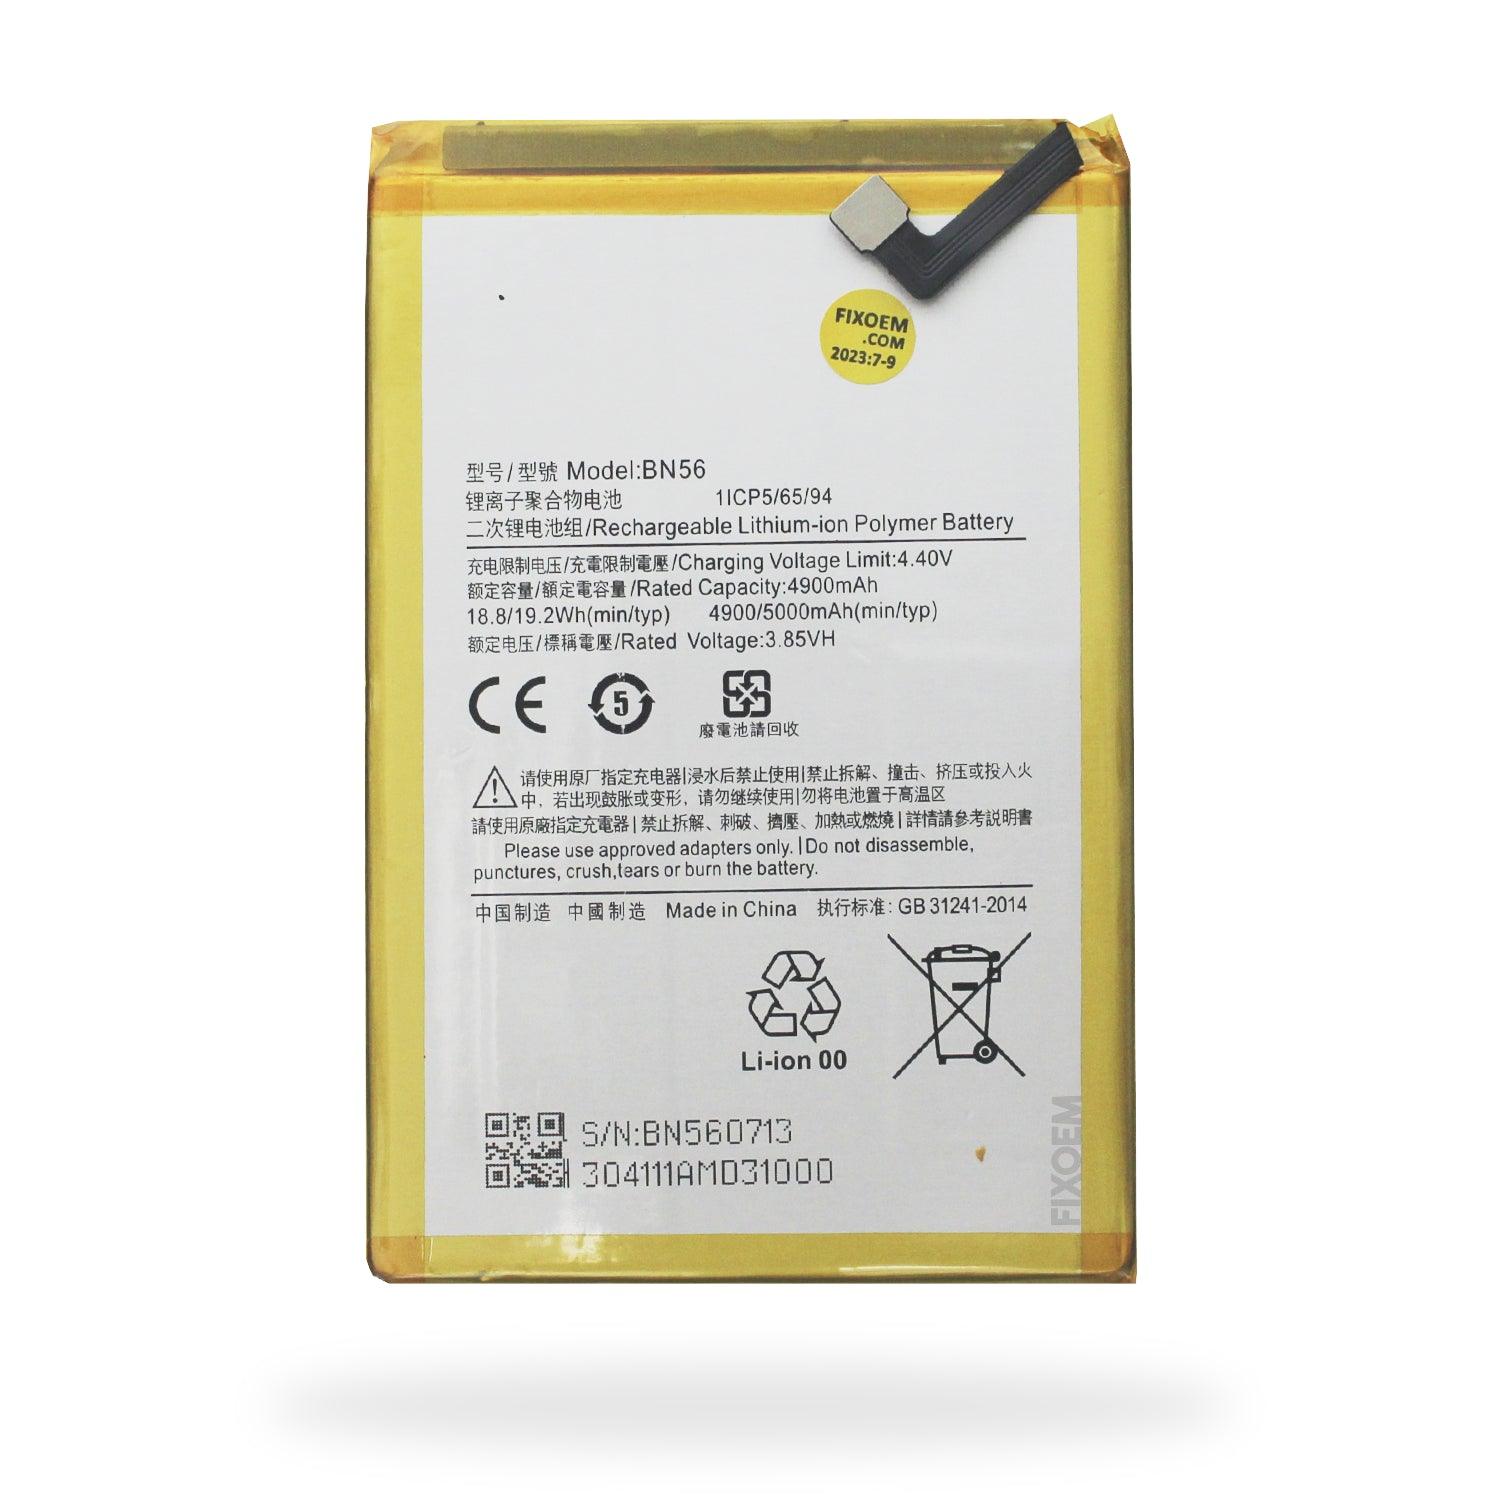 Bateria Xiaomi Redmi 9A / Redmi 9C BN56 a solo $ 160.00 Refaccion y puestos celulares, refurbish y microelectronica.- FixOEM